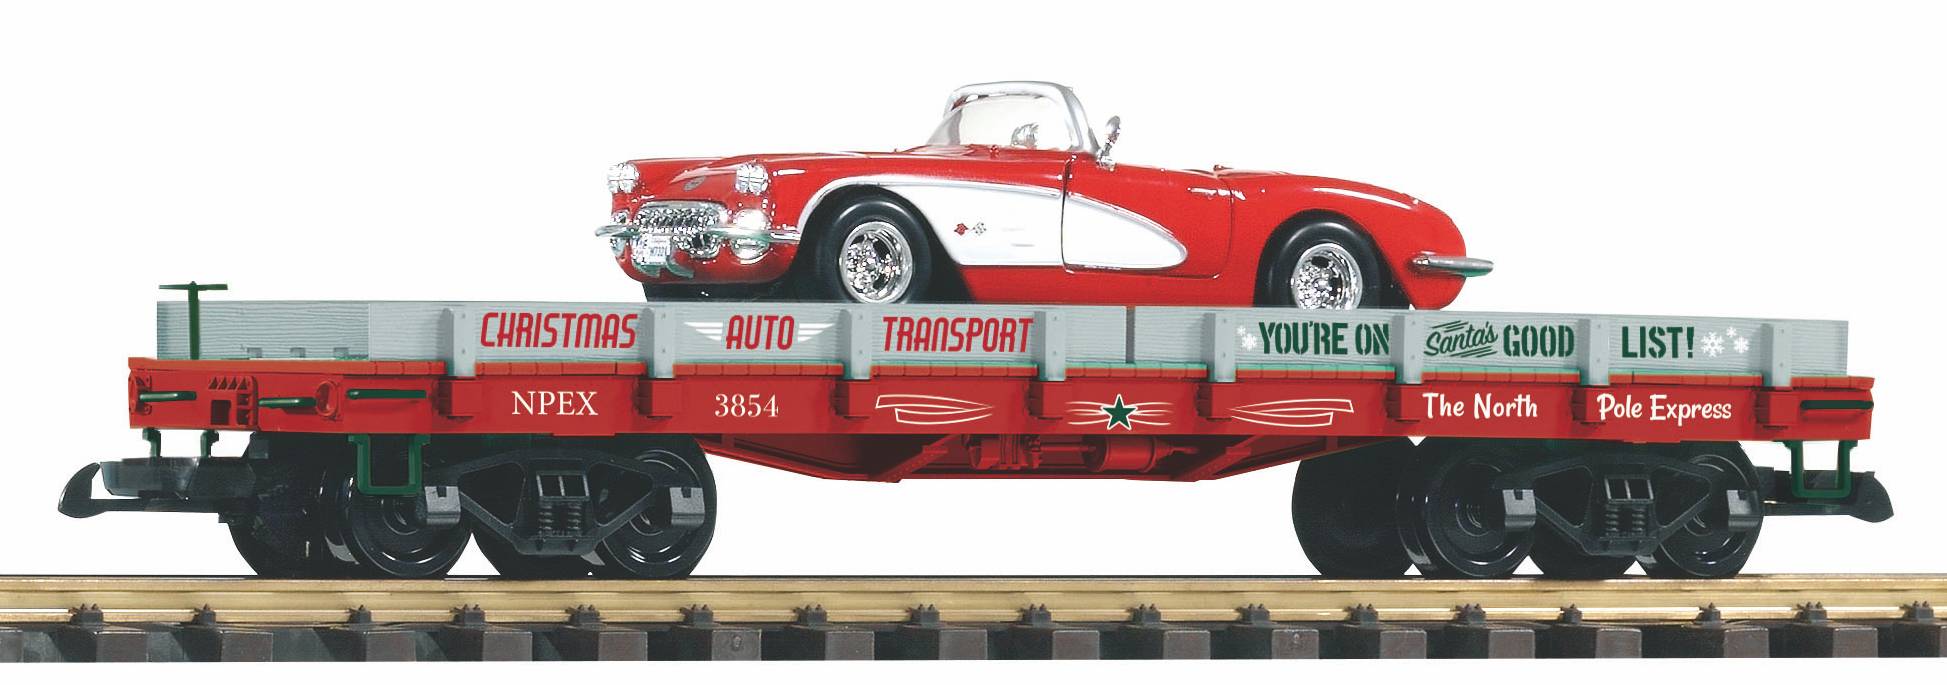 PIKO 2018 - Autotransportwagen - Art.Nr. 38761 - Beladen mit rot / weier Corvette. Bedruckung des Wagens zu Weihnachten ist eine berraschung von PIKO